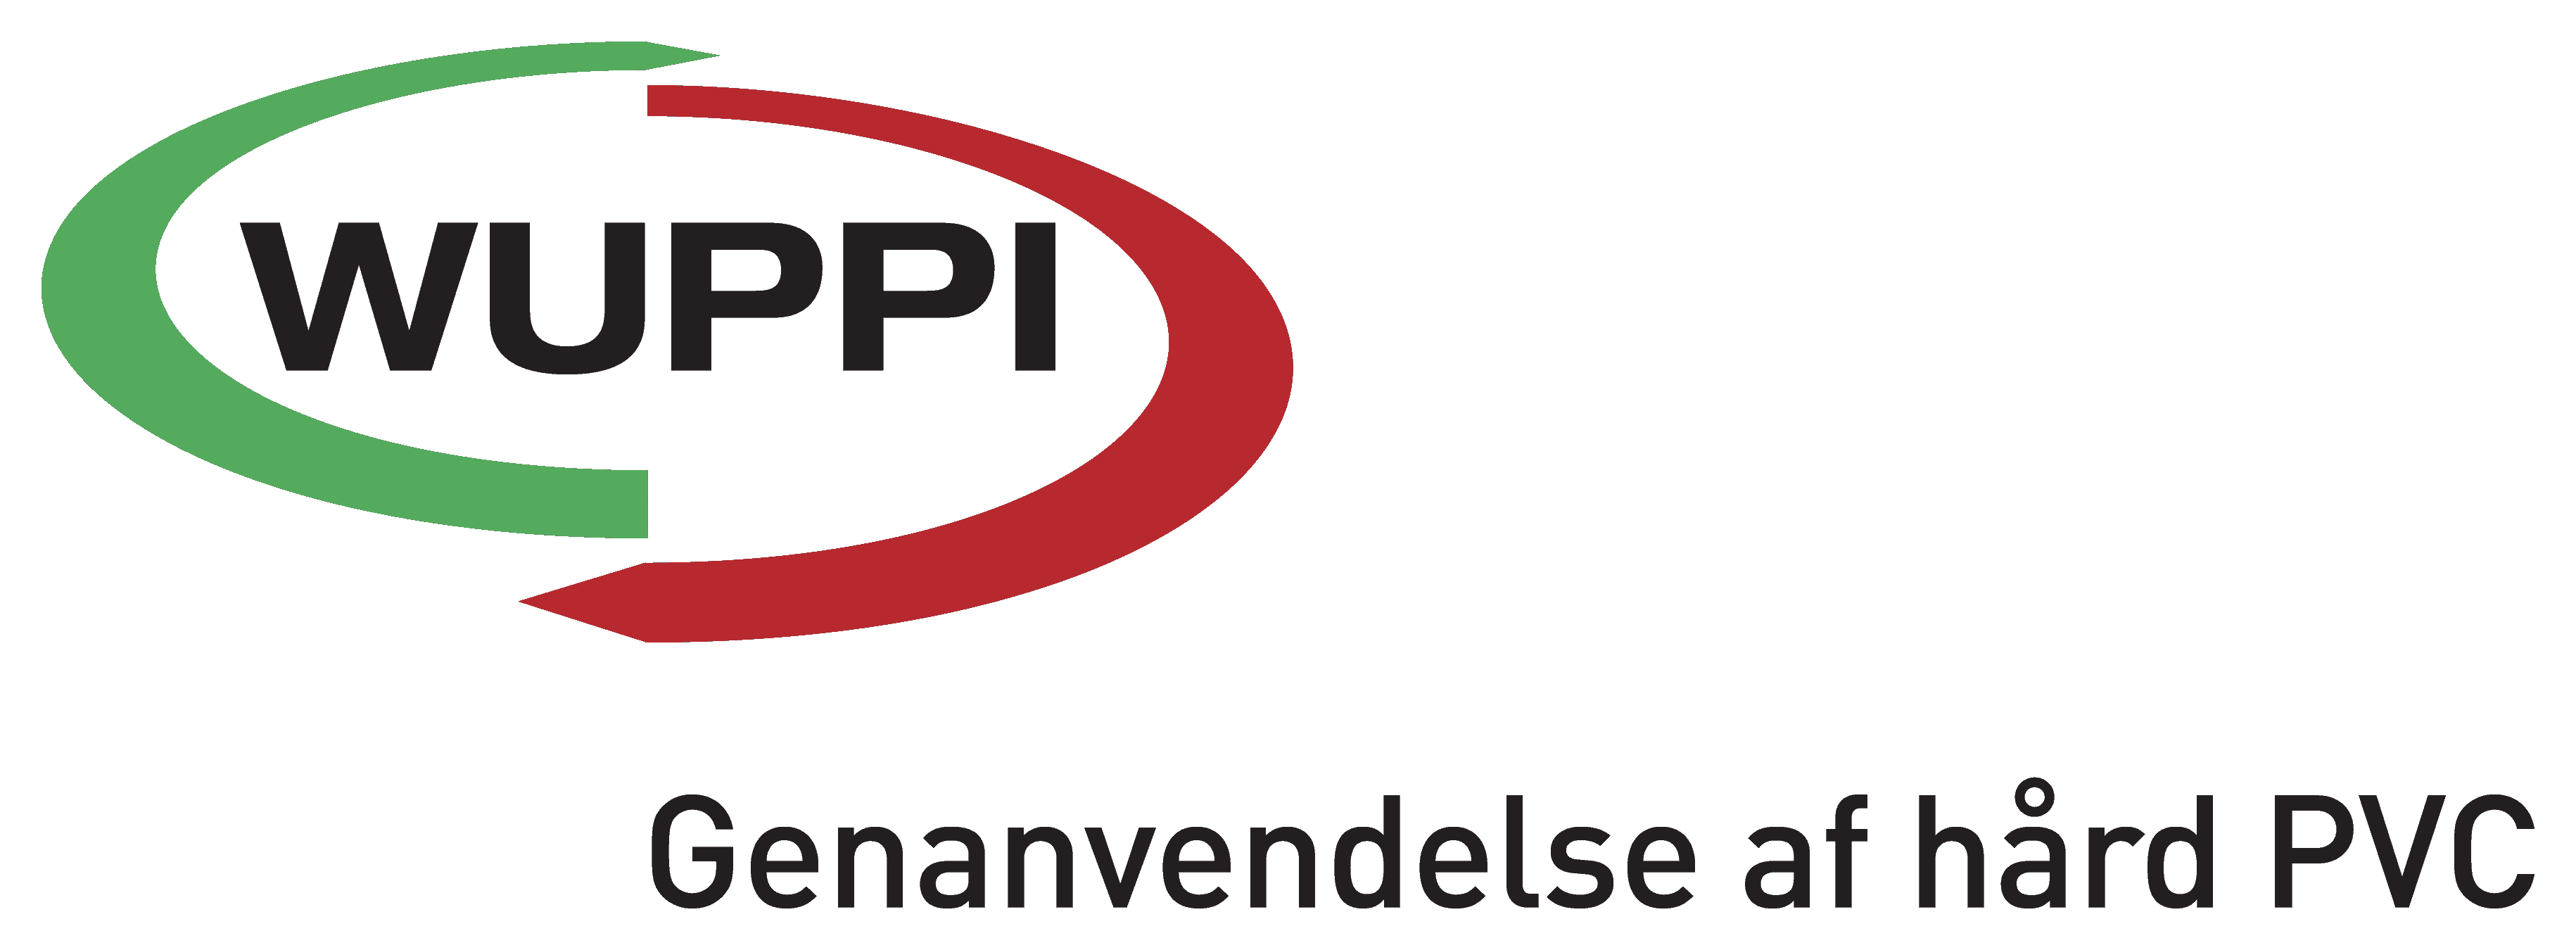 WUPPI logo payoff